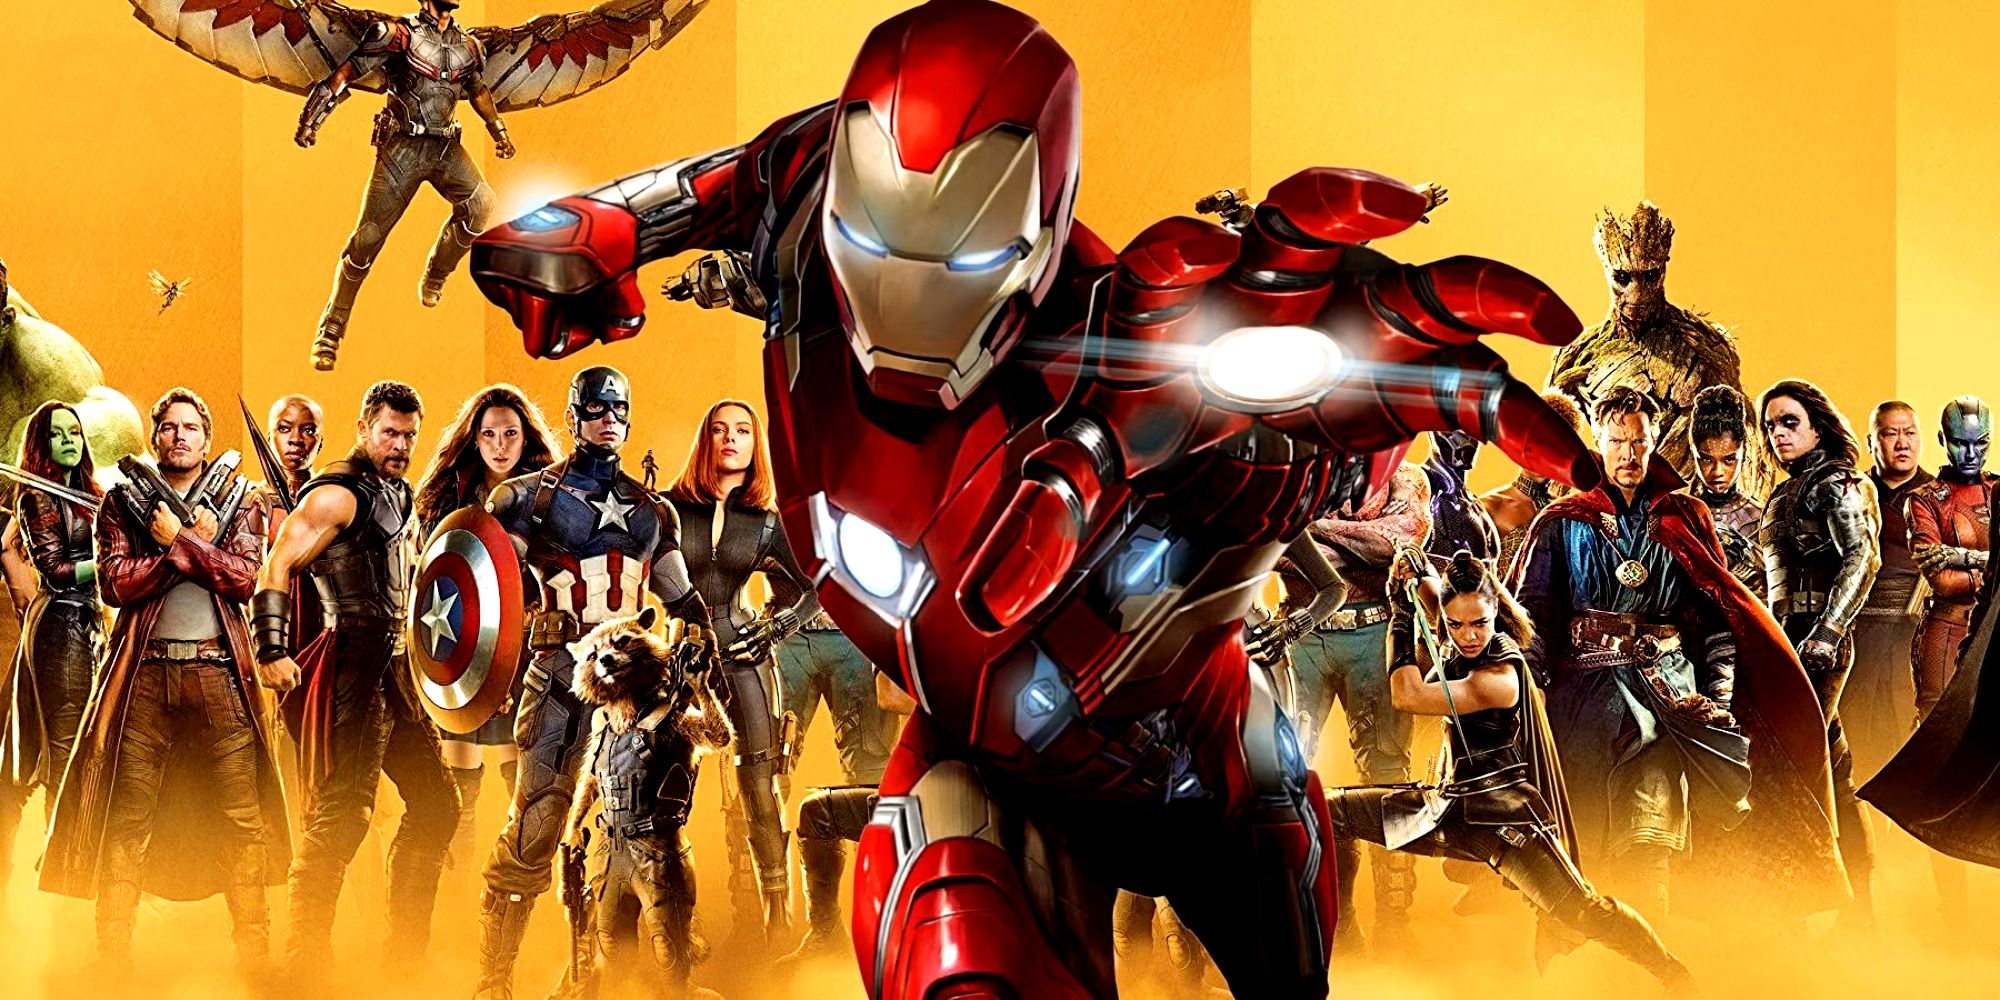 MCU Iron Man and Marvel Studios Infinity Saga Poster